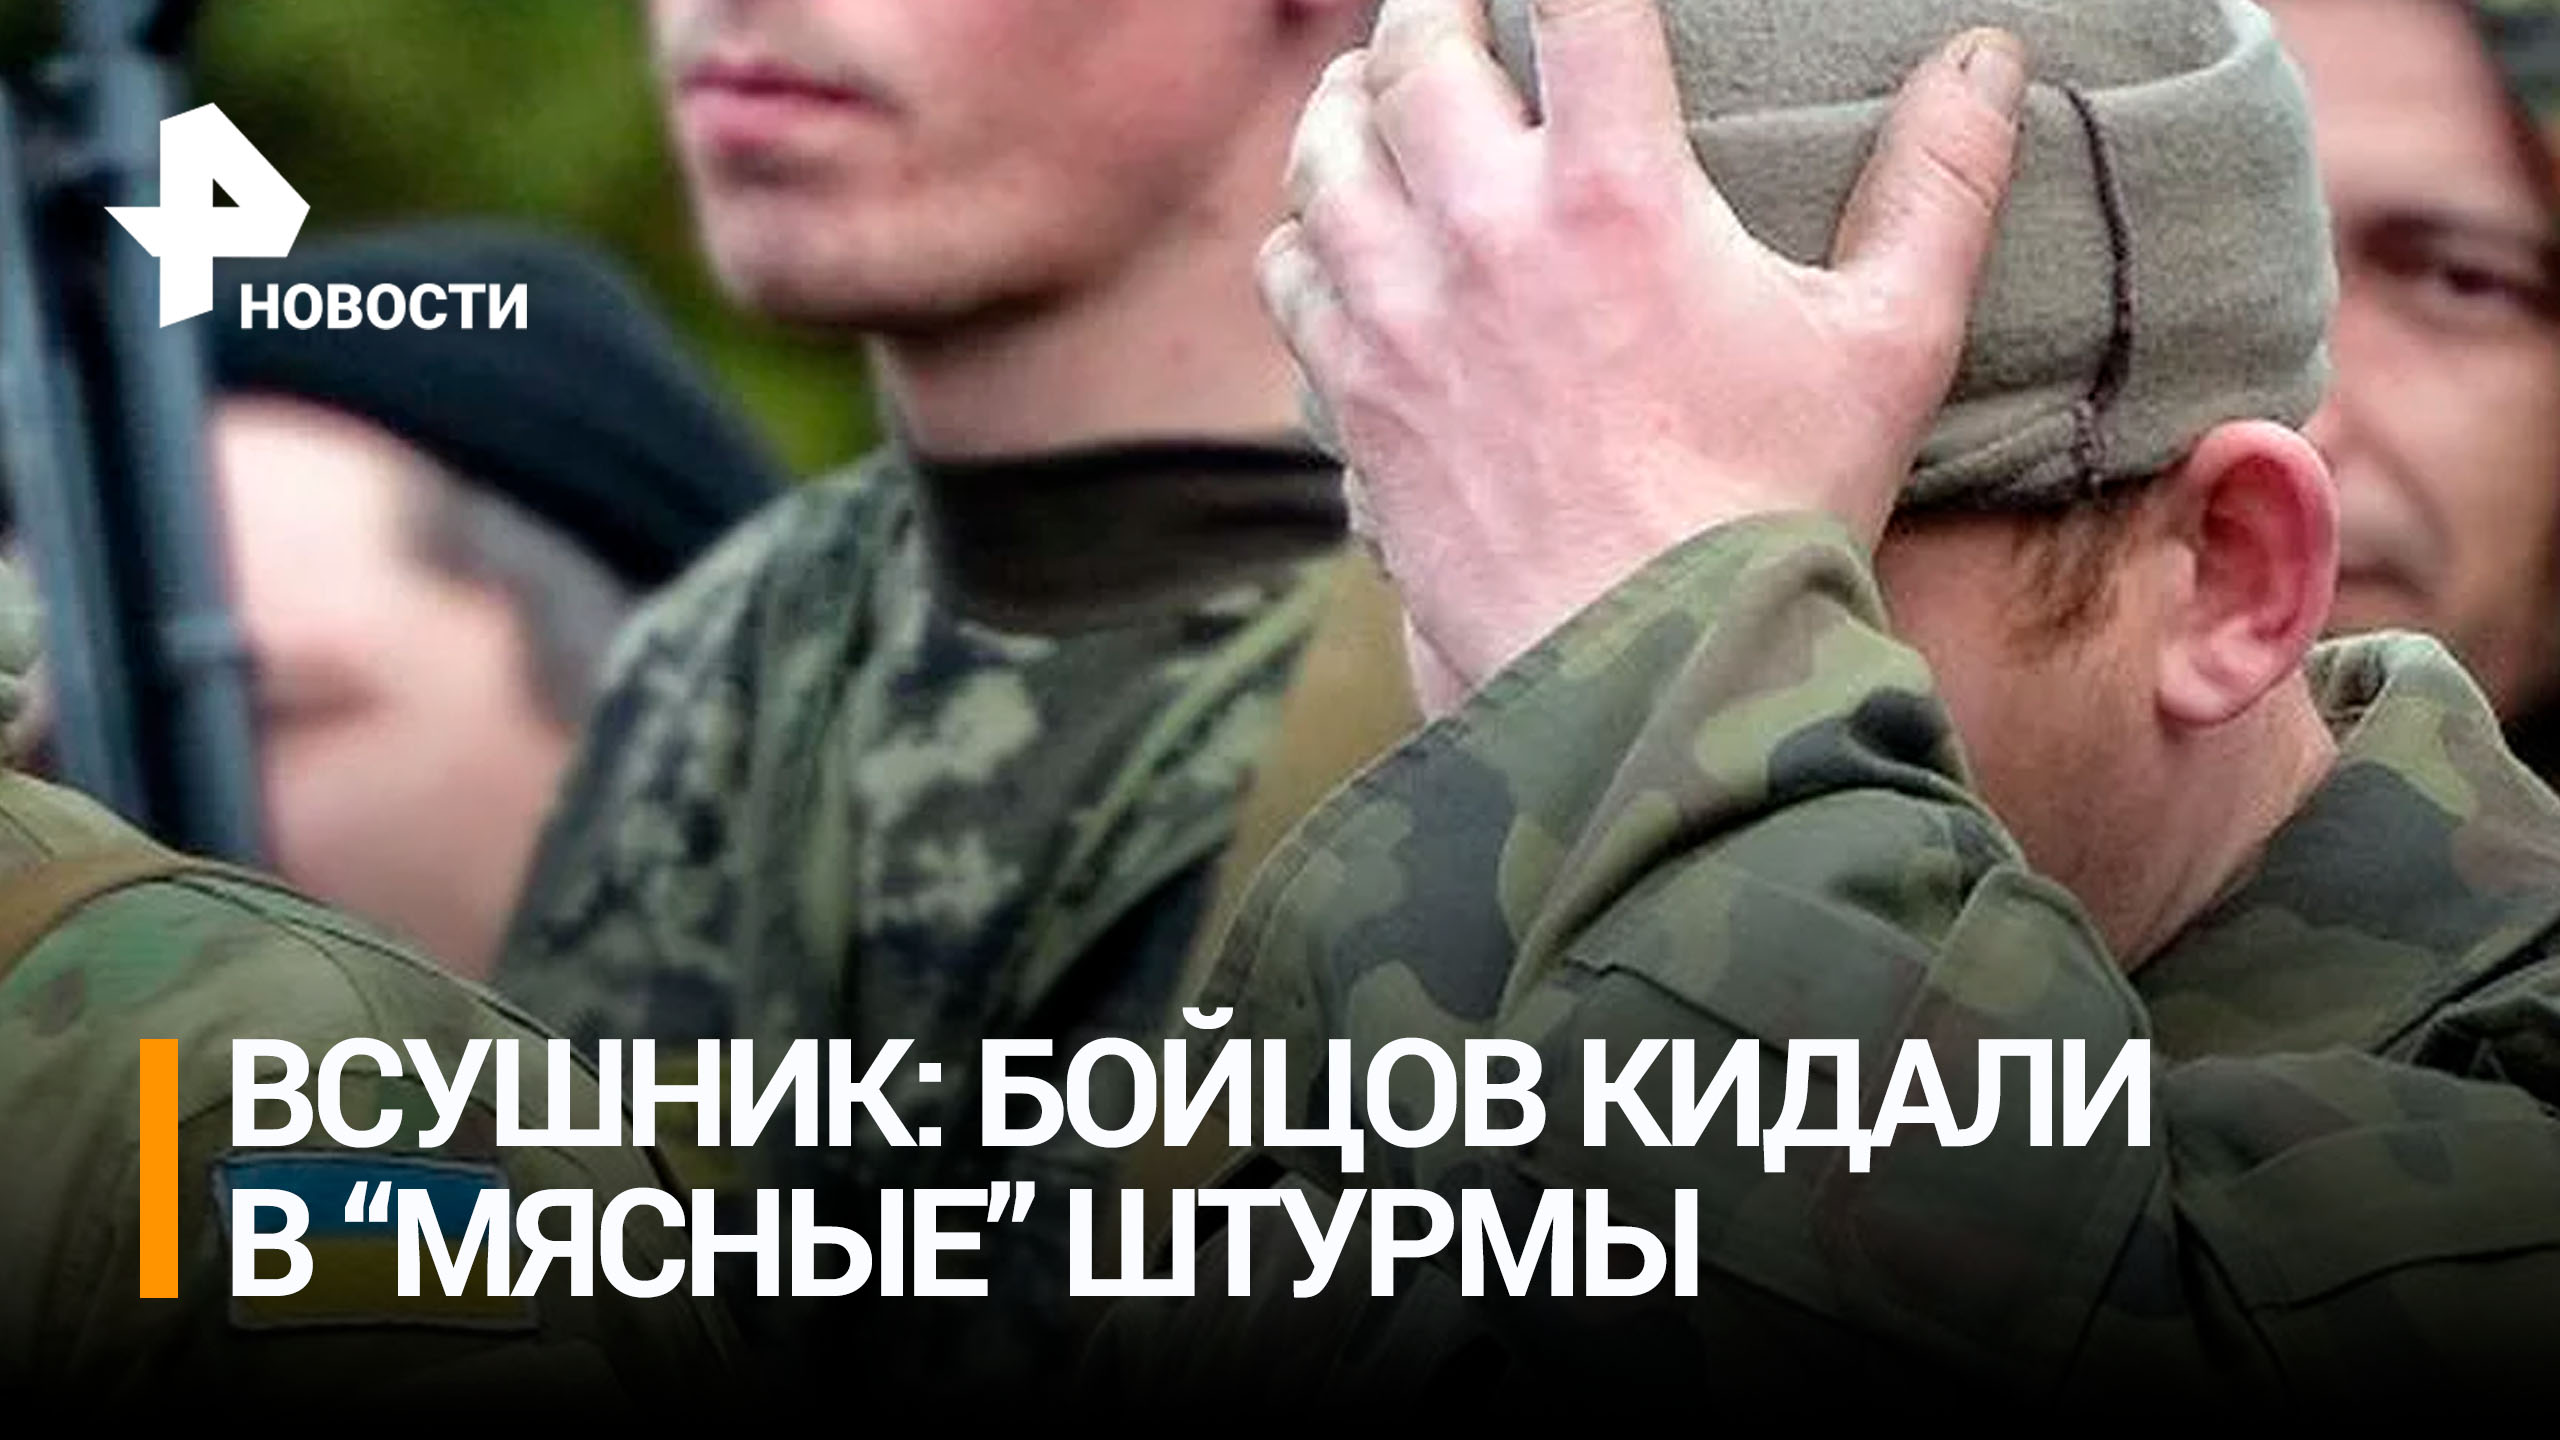 Боец ВСУ: Киев отправлял солдат на "мясные" штурмы в ходе контрнаступления / РЕН Новости